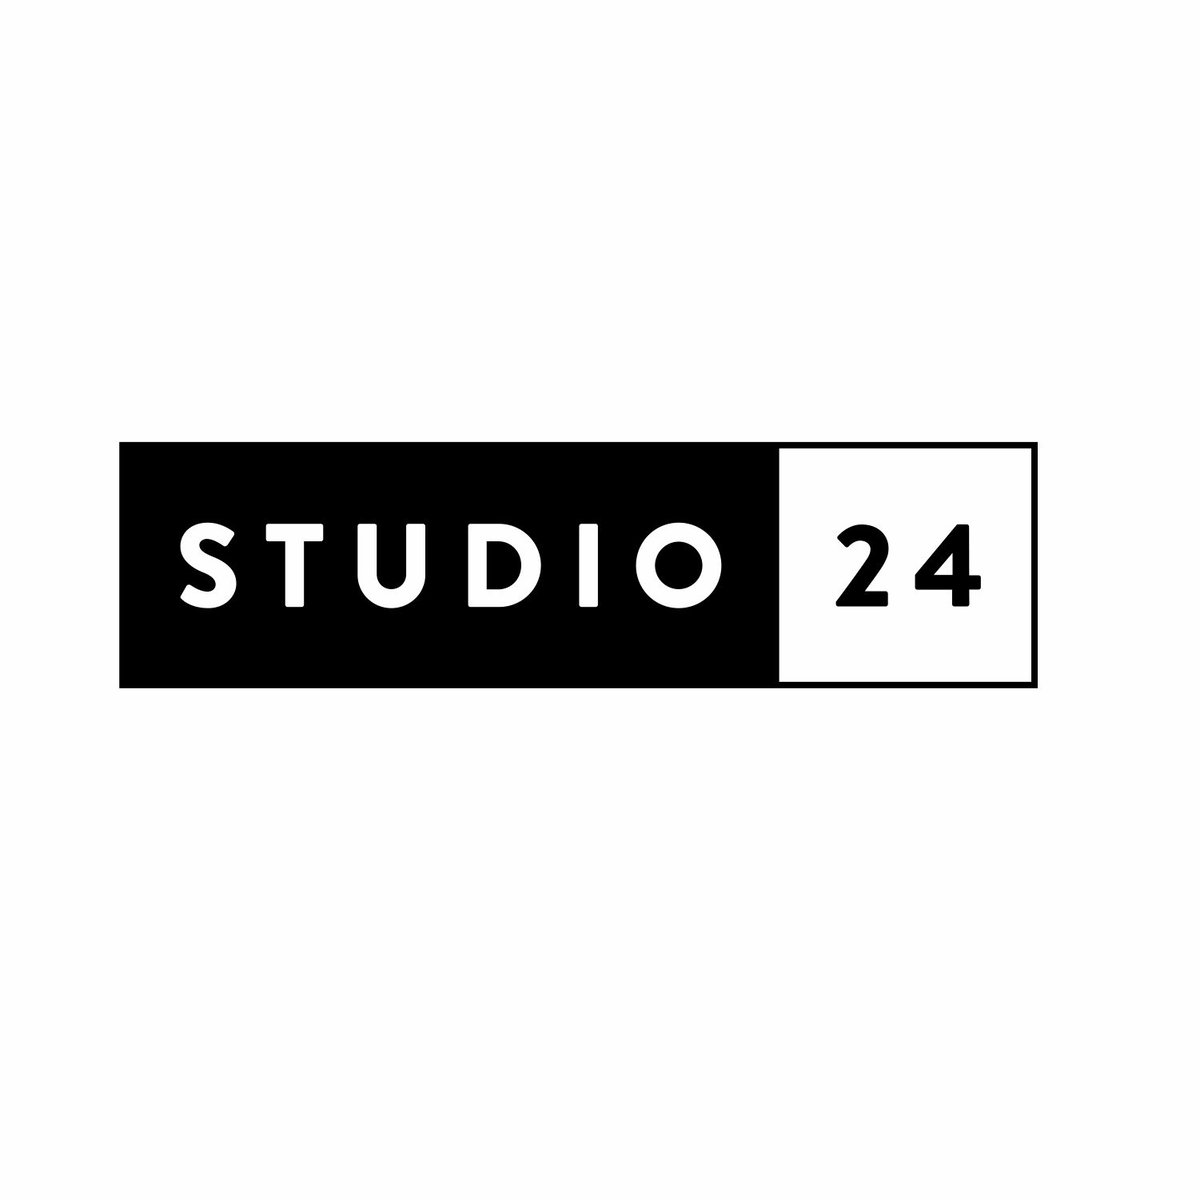 Studio 24 Sticker